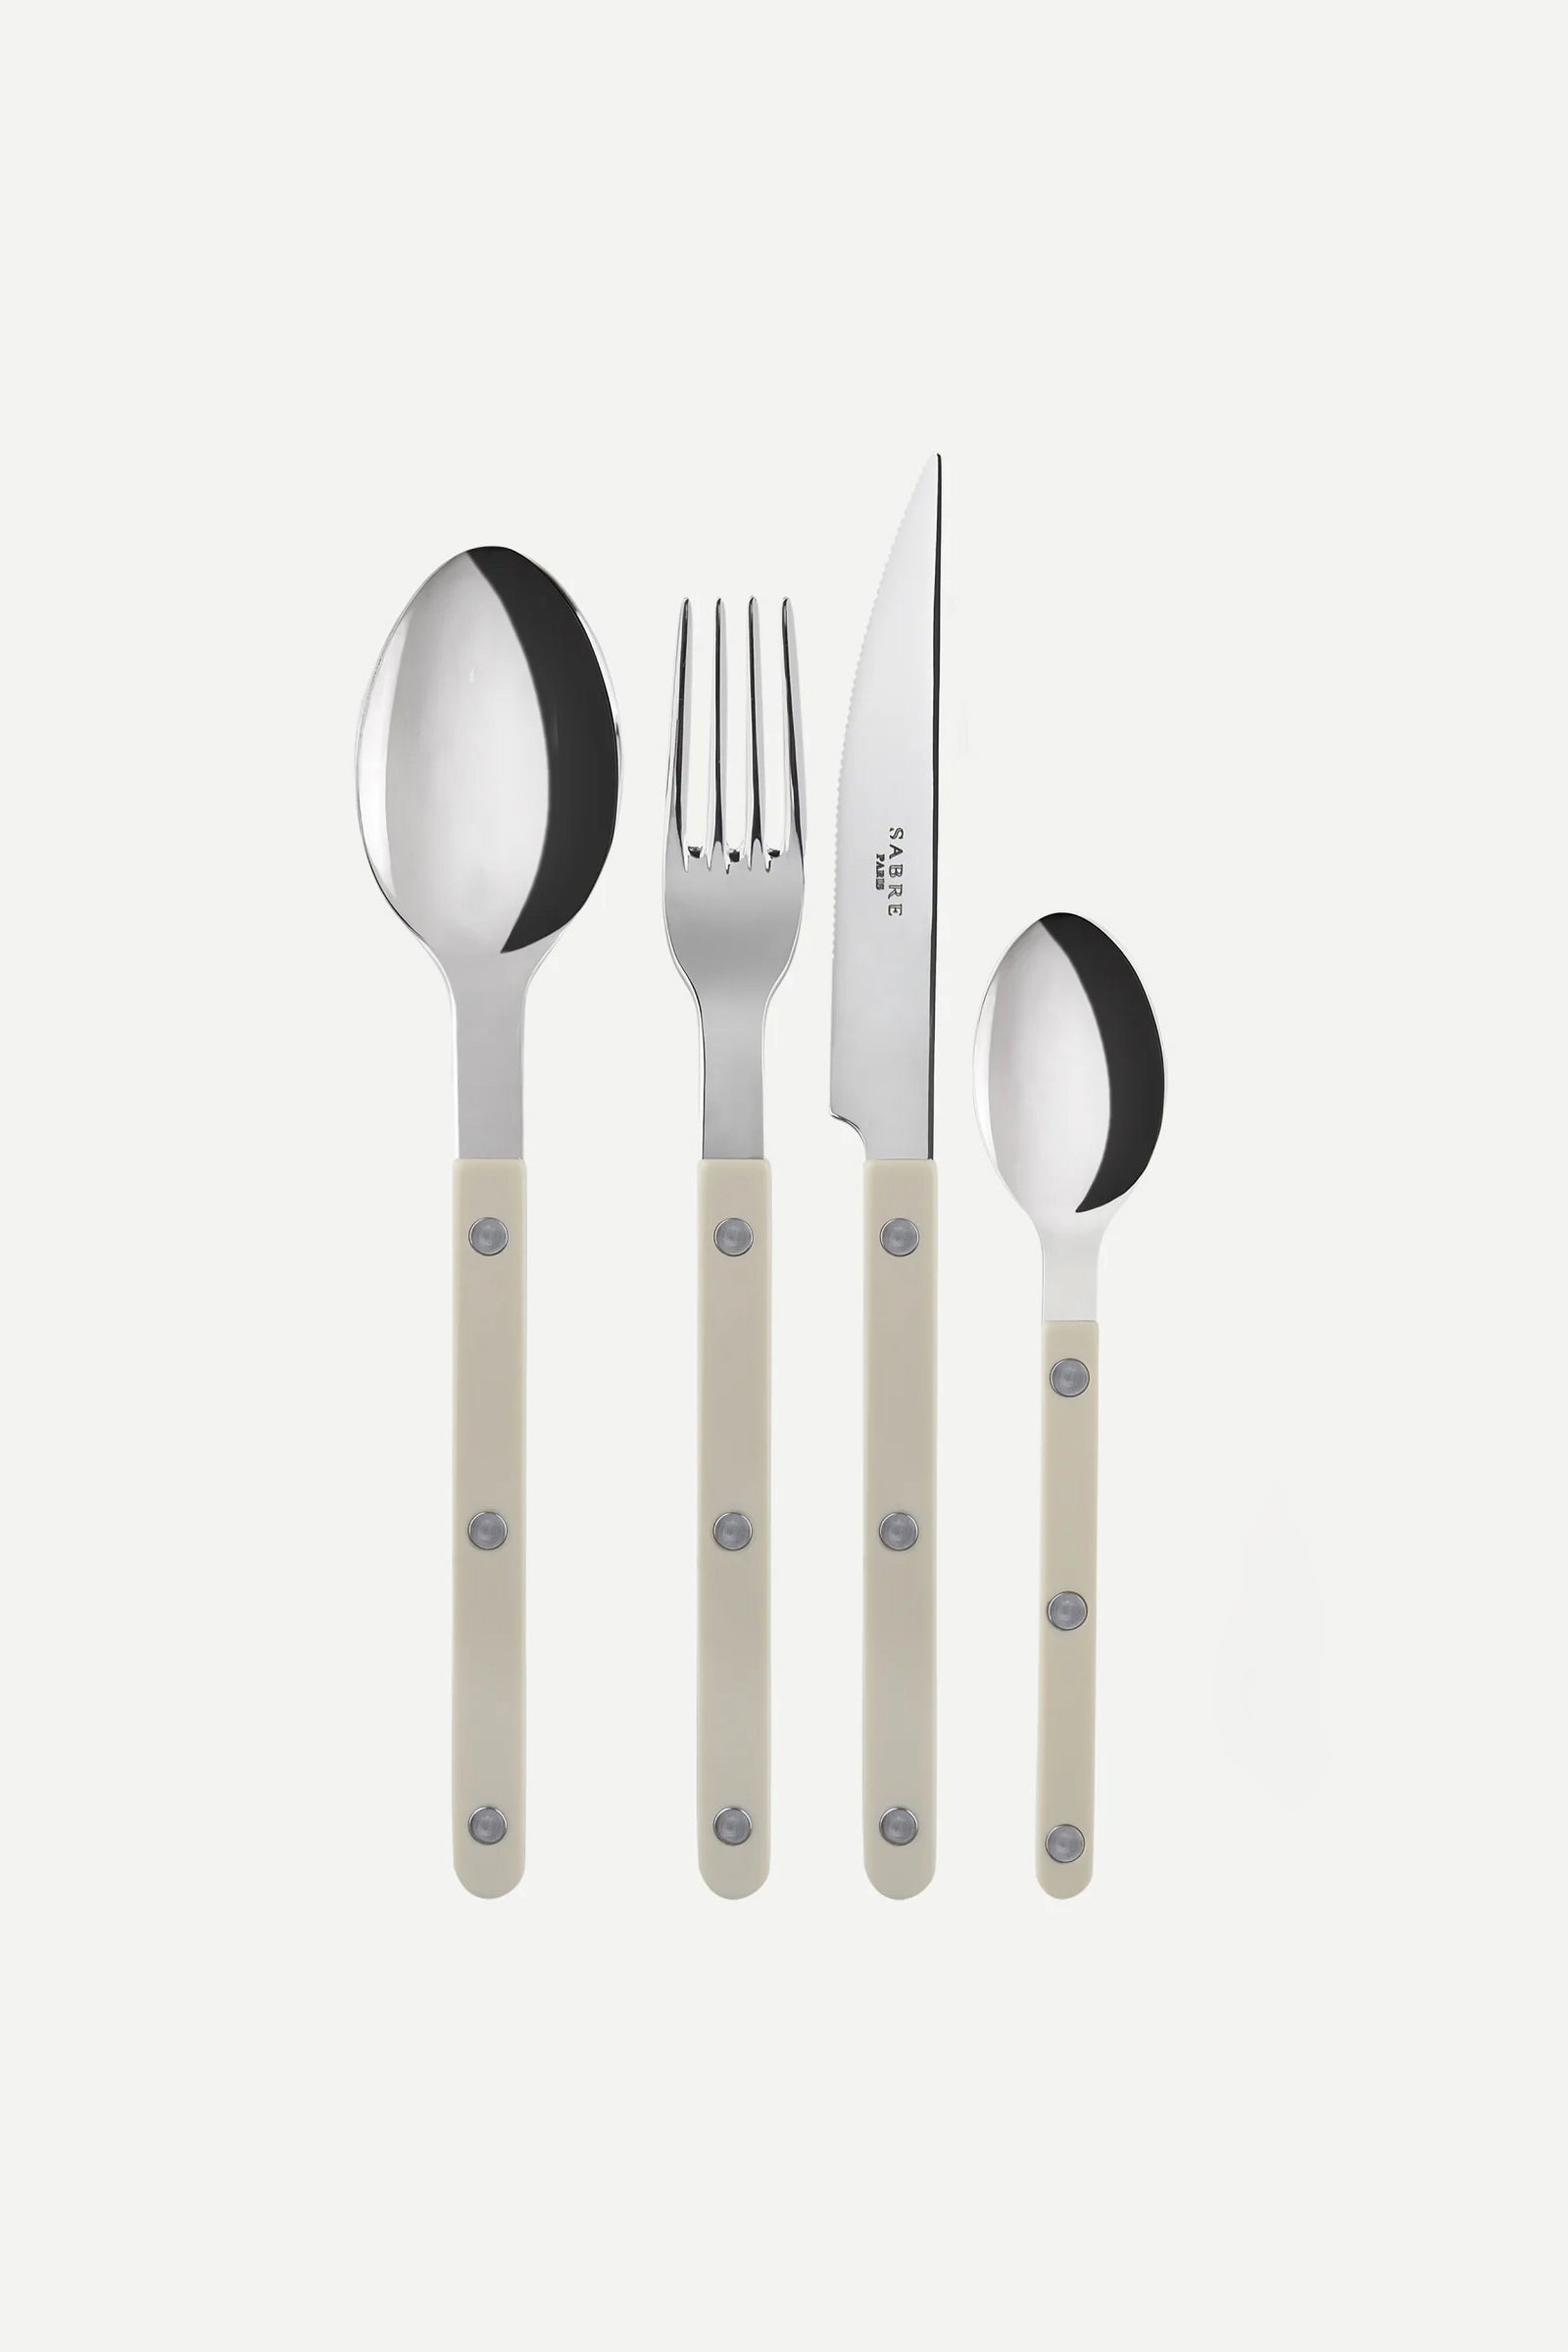 Bistrot cutlery light khaki-Sabre Paris-KIOSK48TH